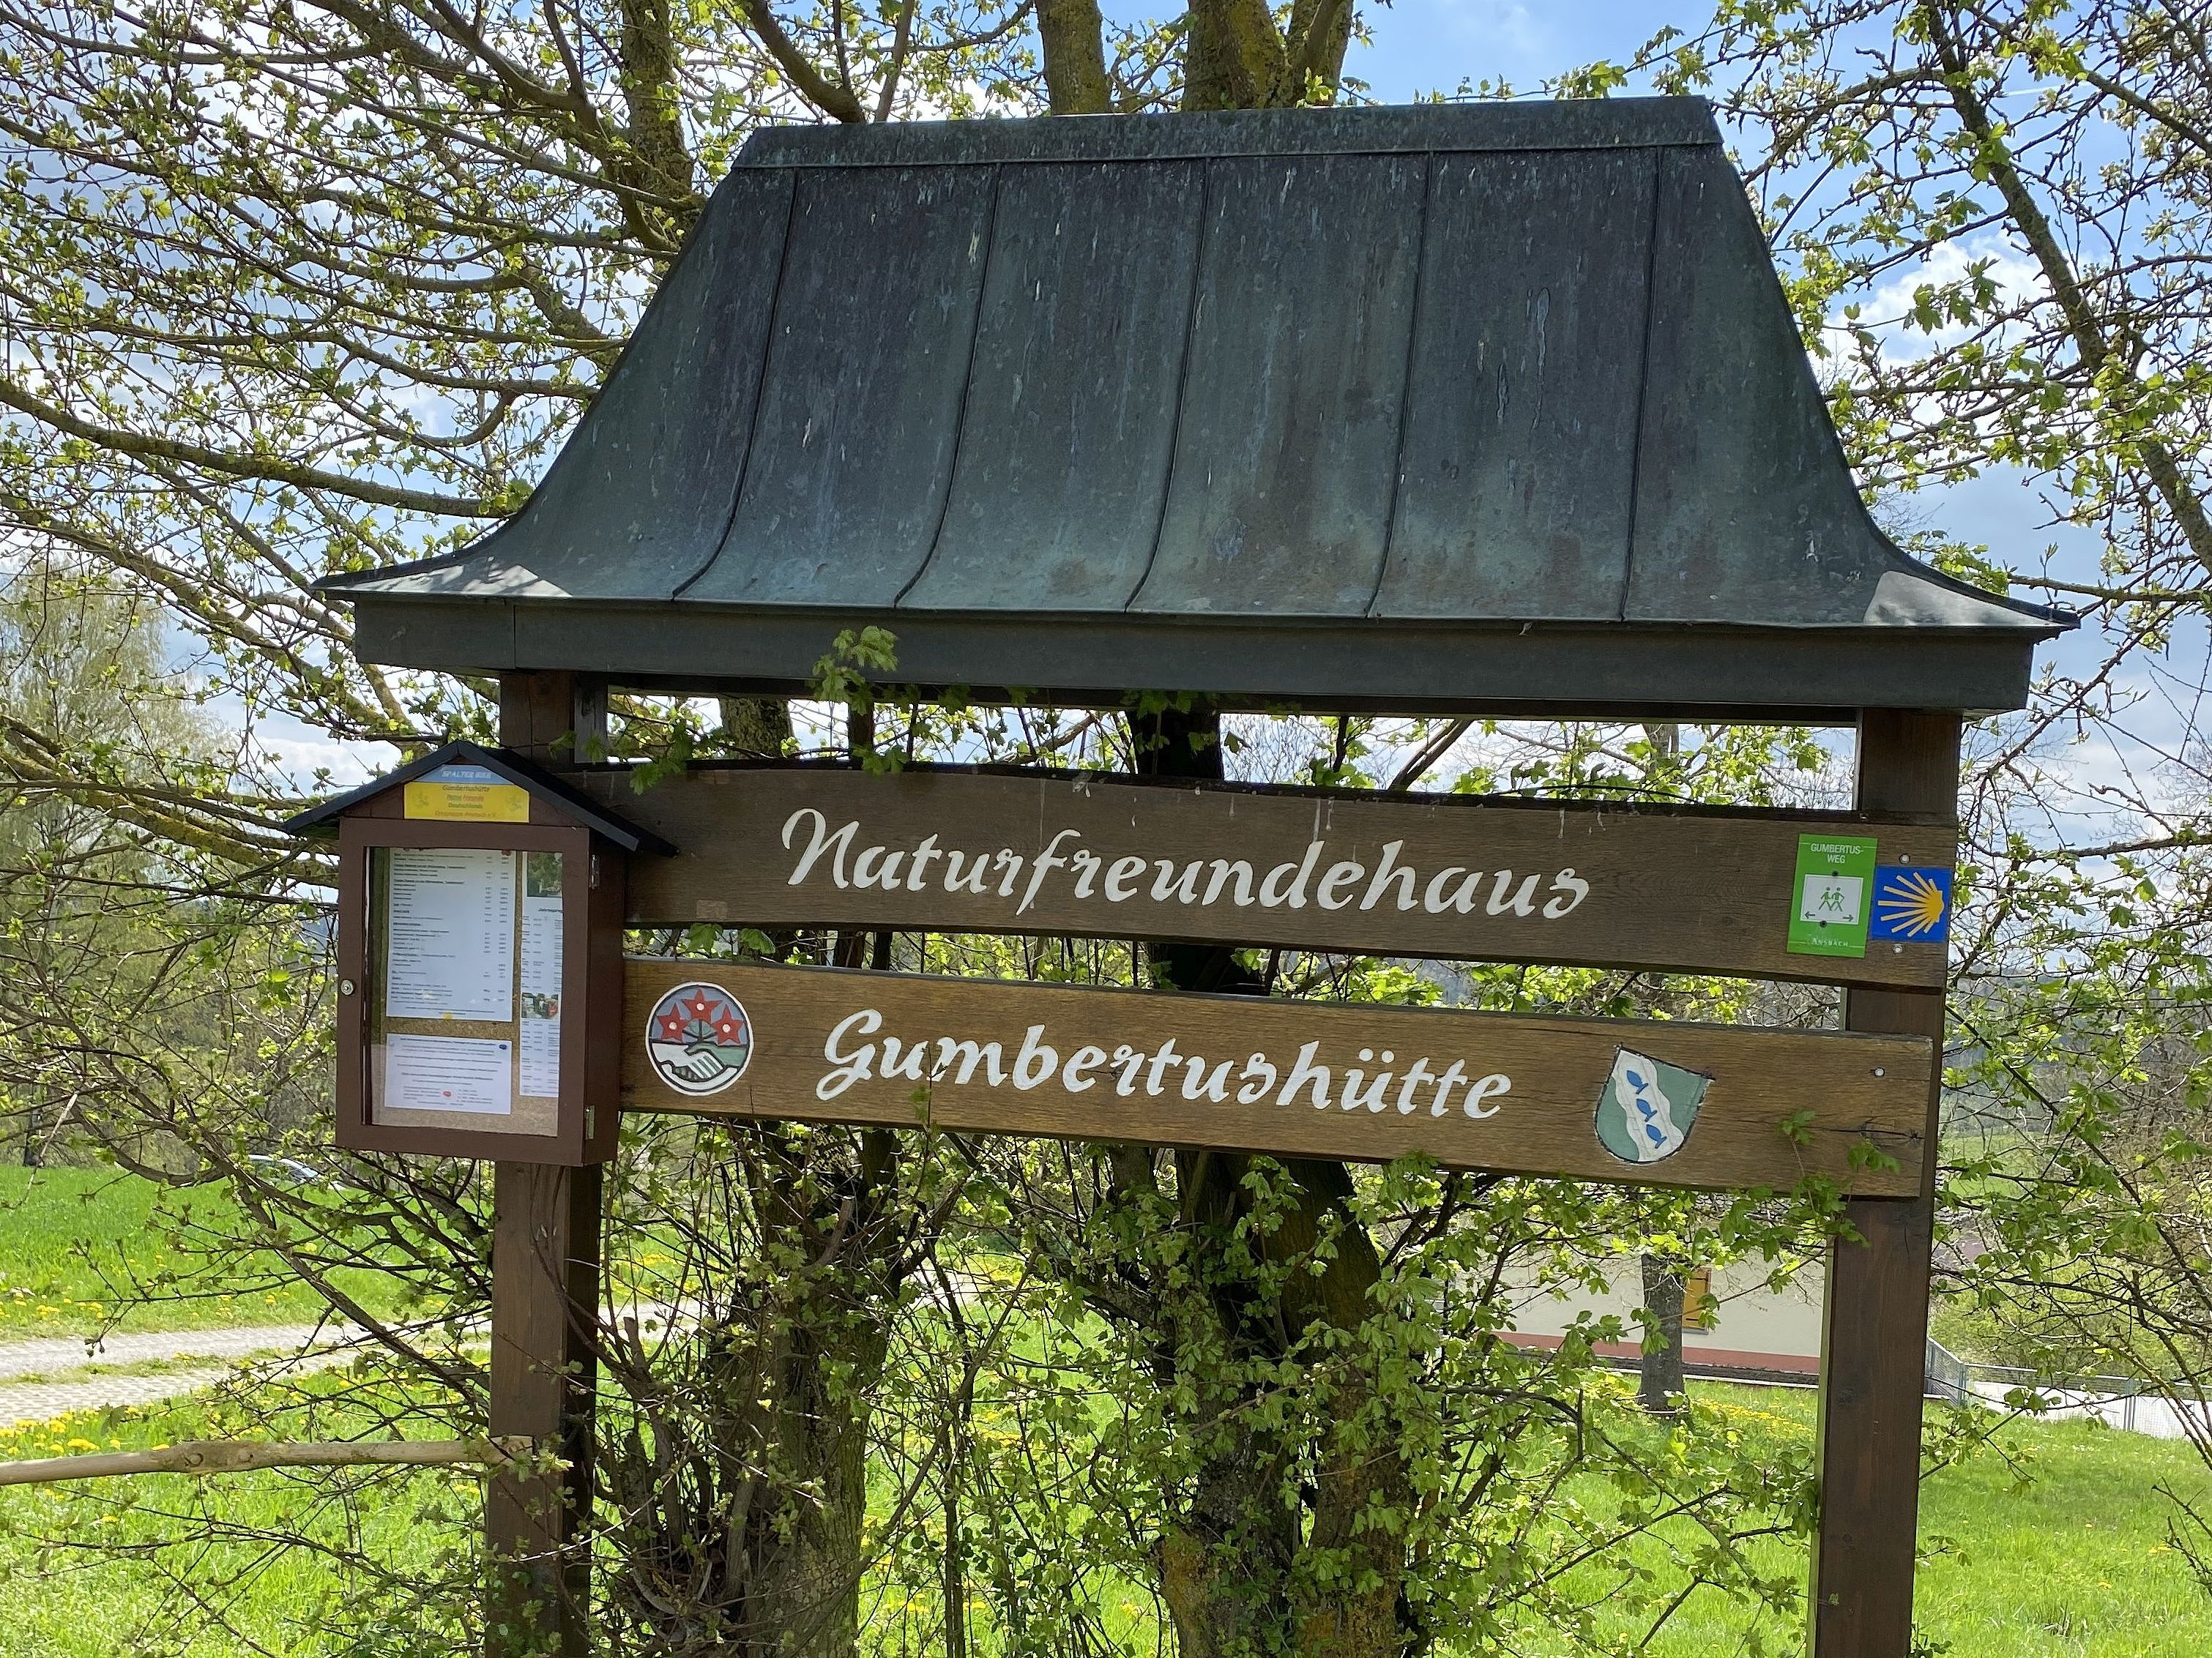 Naturfreundehaus Gumbertushütte